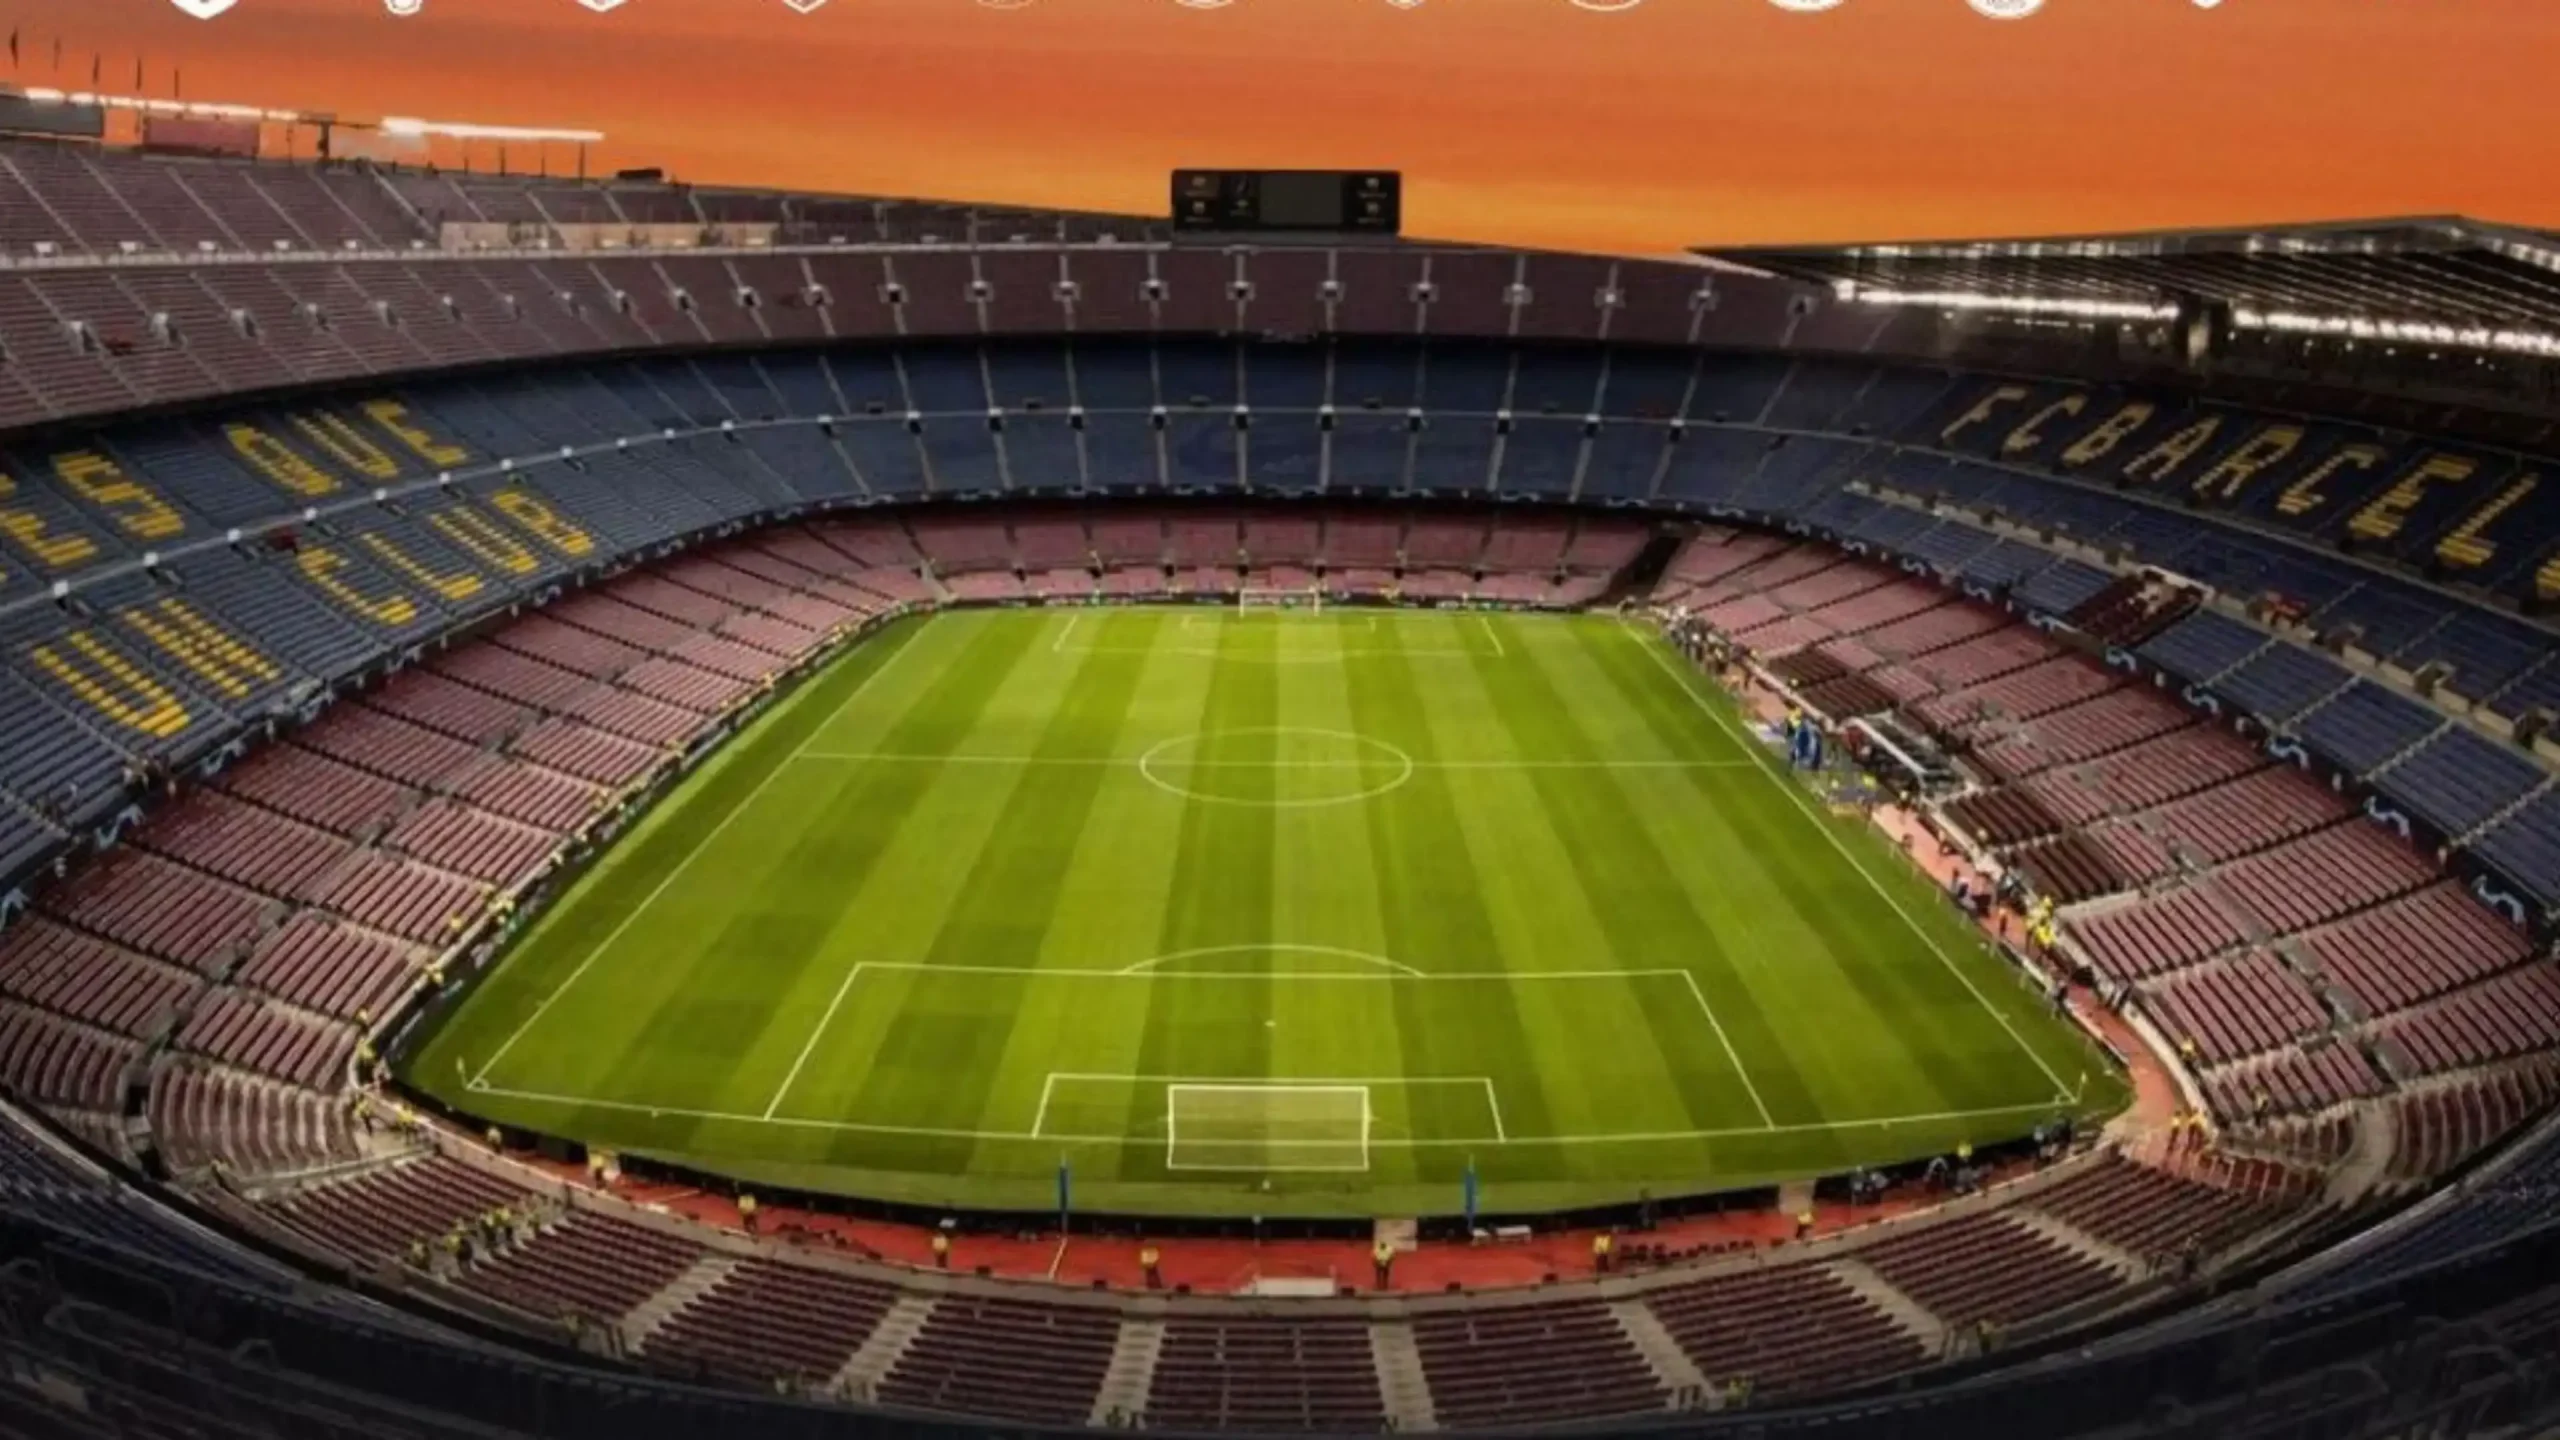 Sân vận động Camp Nou – Biểu tượng kiến trúc và bóng đá của Barcelona